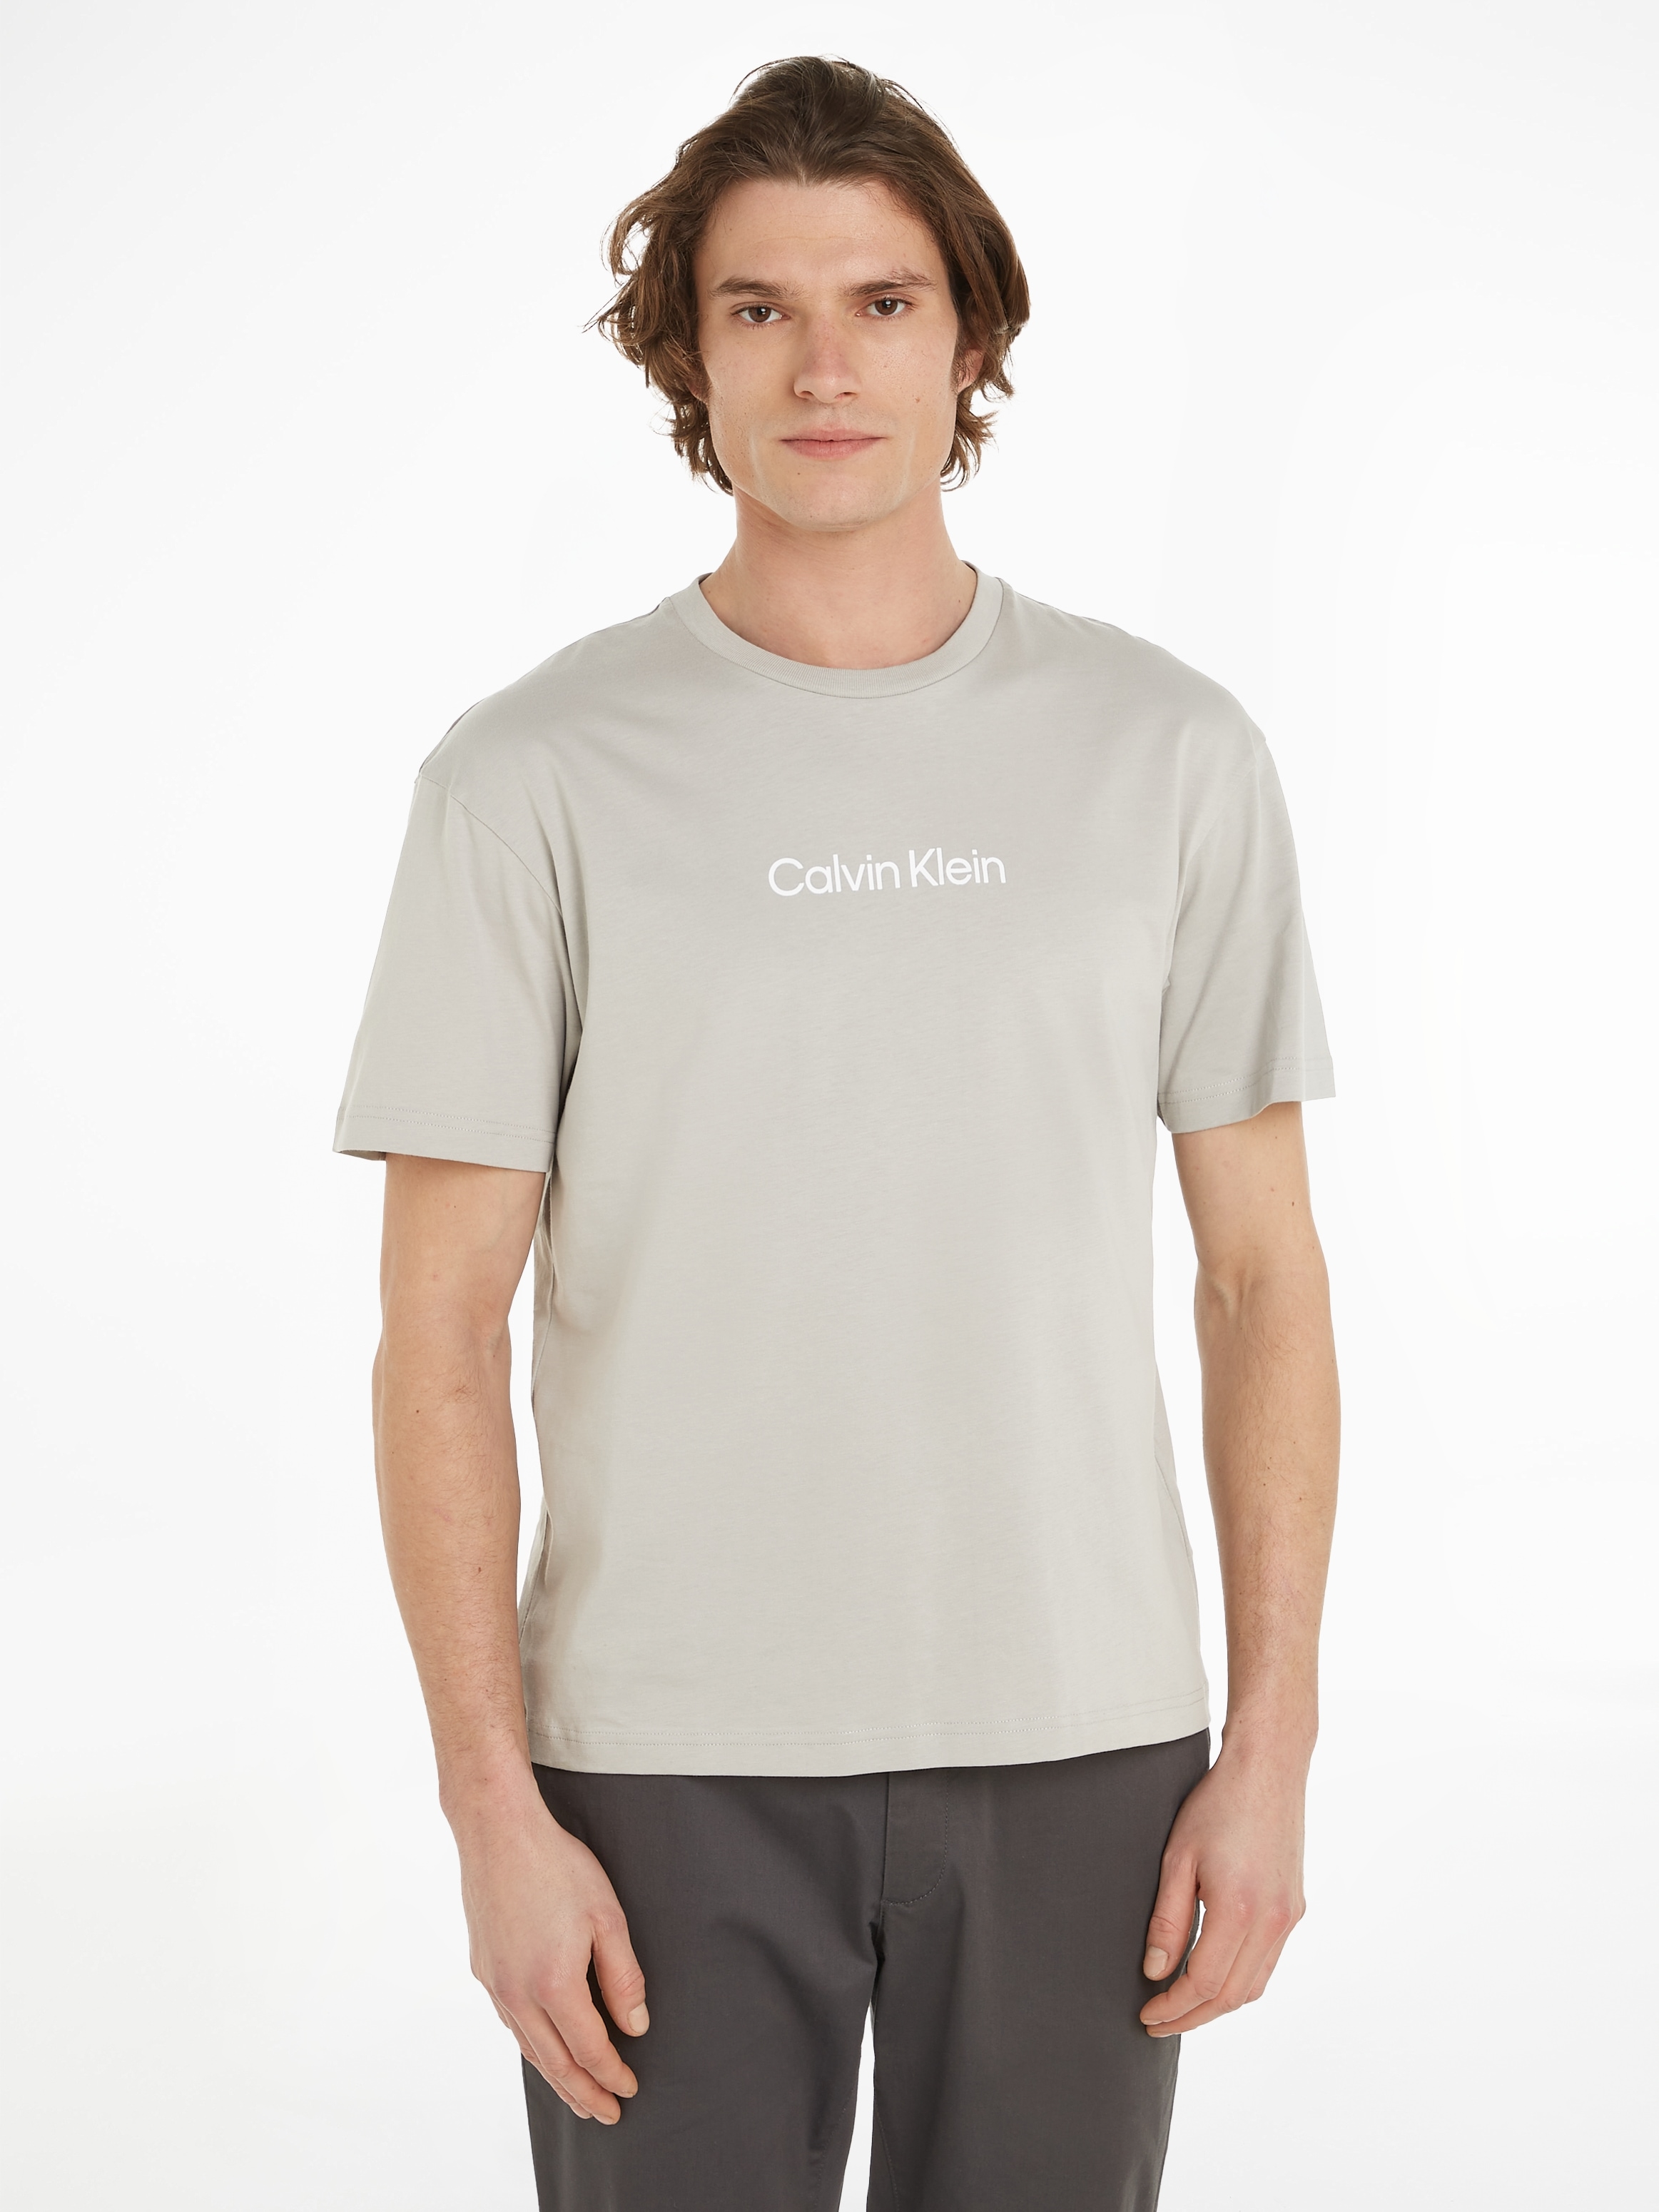 COMFORT ♕ Klein bei T-SHIRT«, aufgedrucktem mit Markenlabel »HERO T-Shirt Calvin LOGO